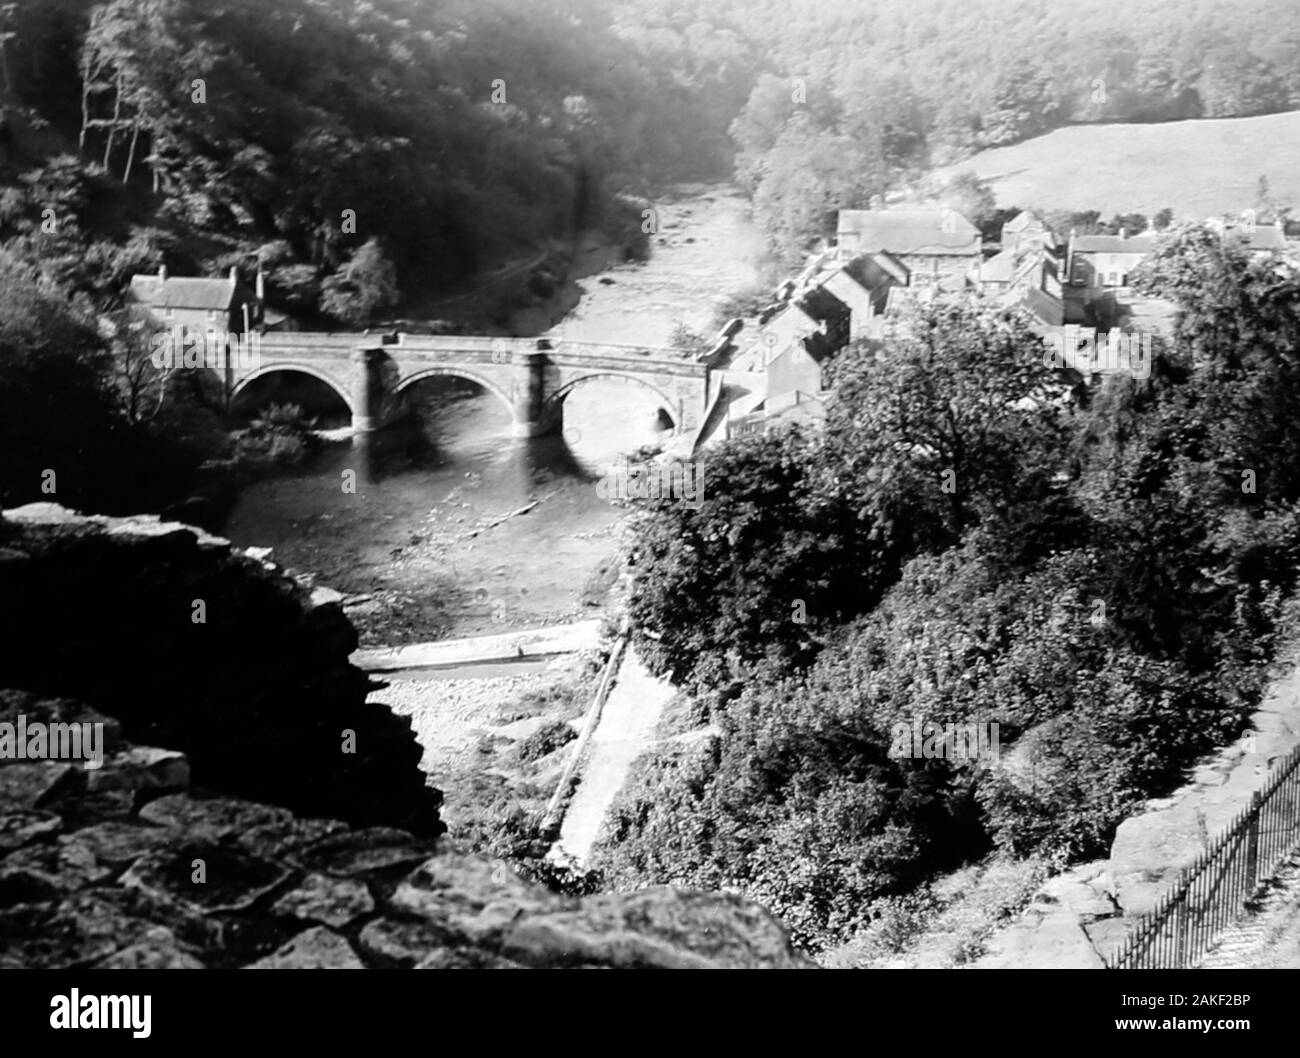 River Swale, Richmond, Yorkshire au 1940/50s Banque D'Images